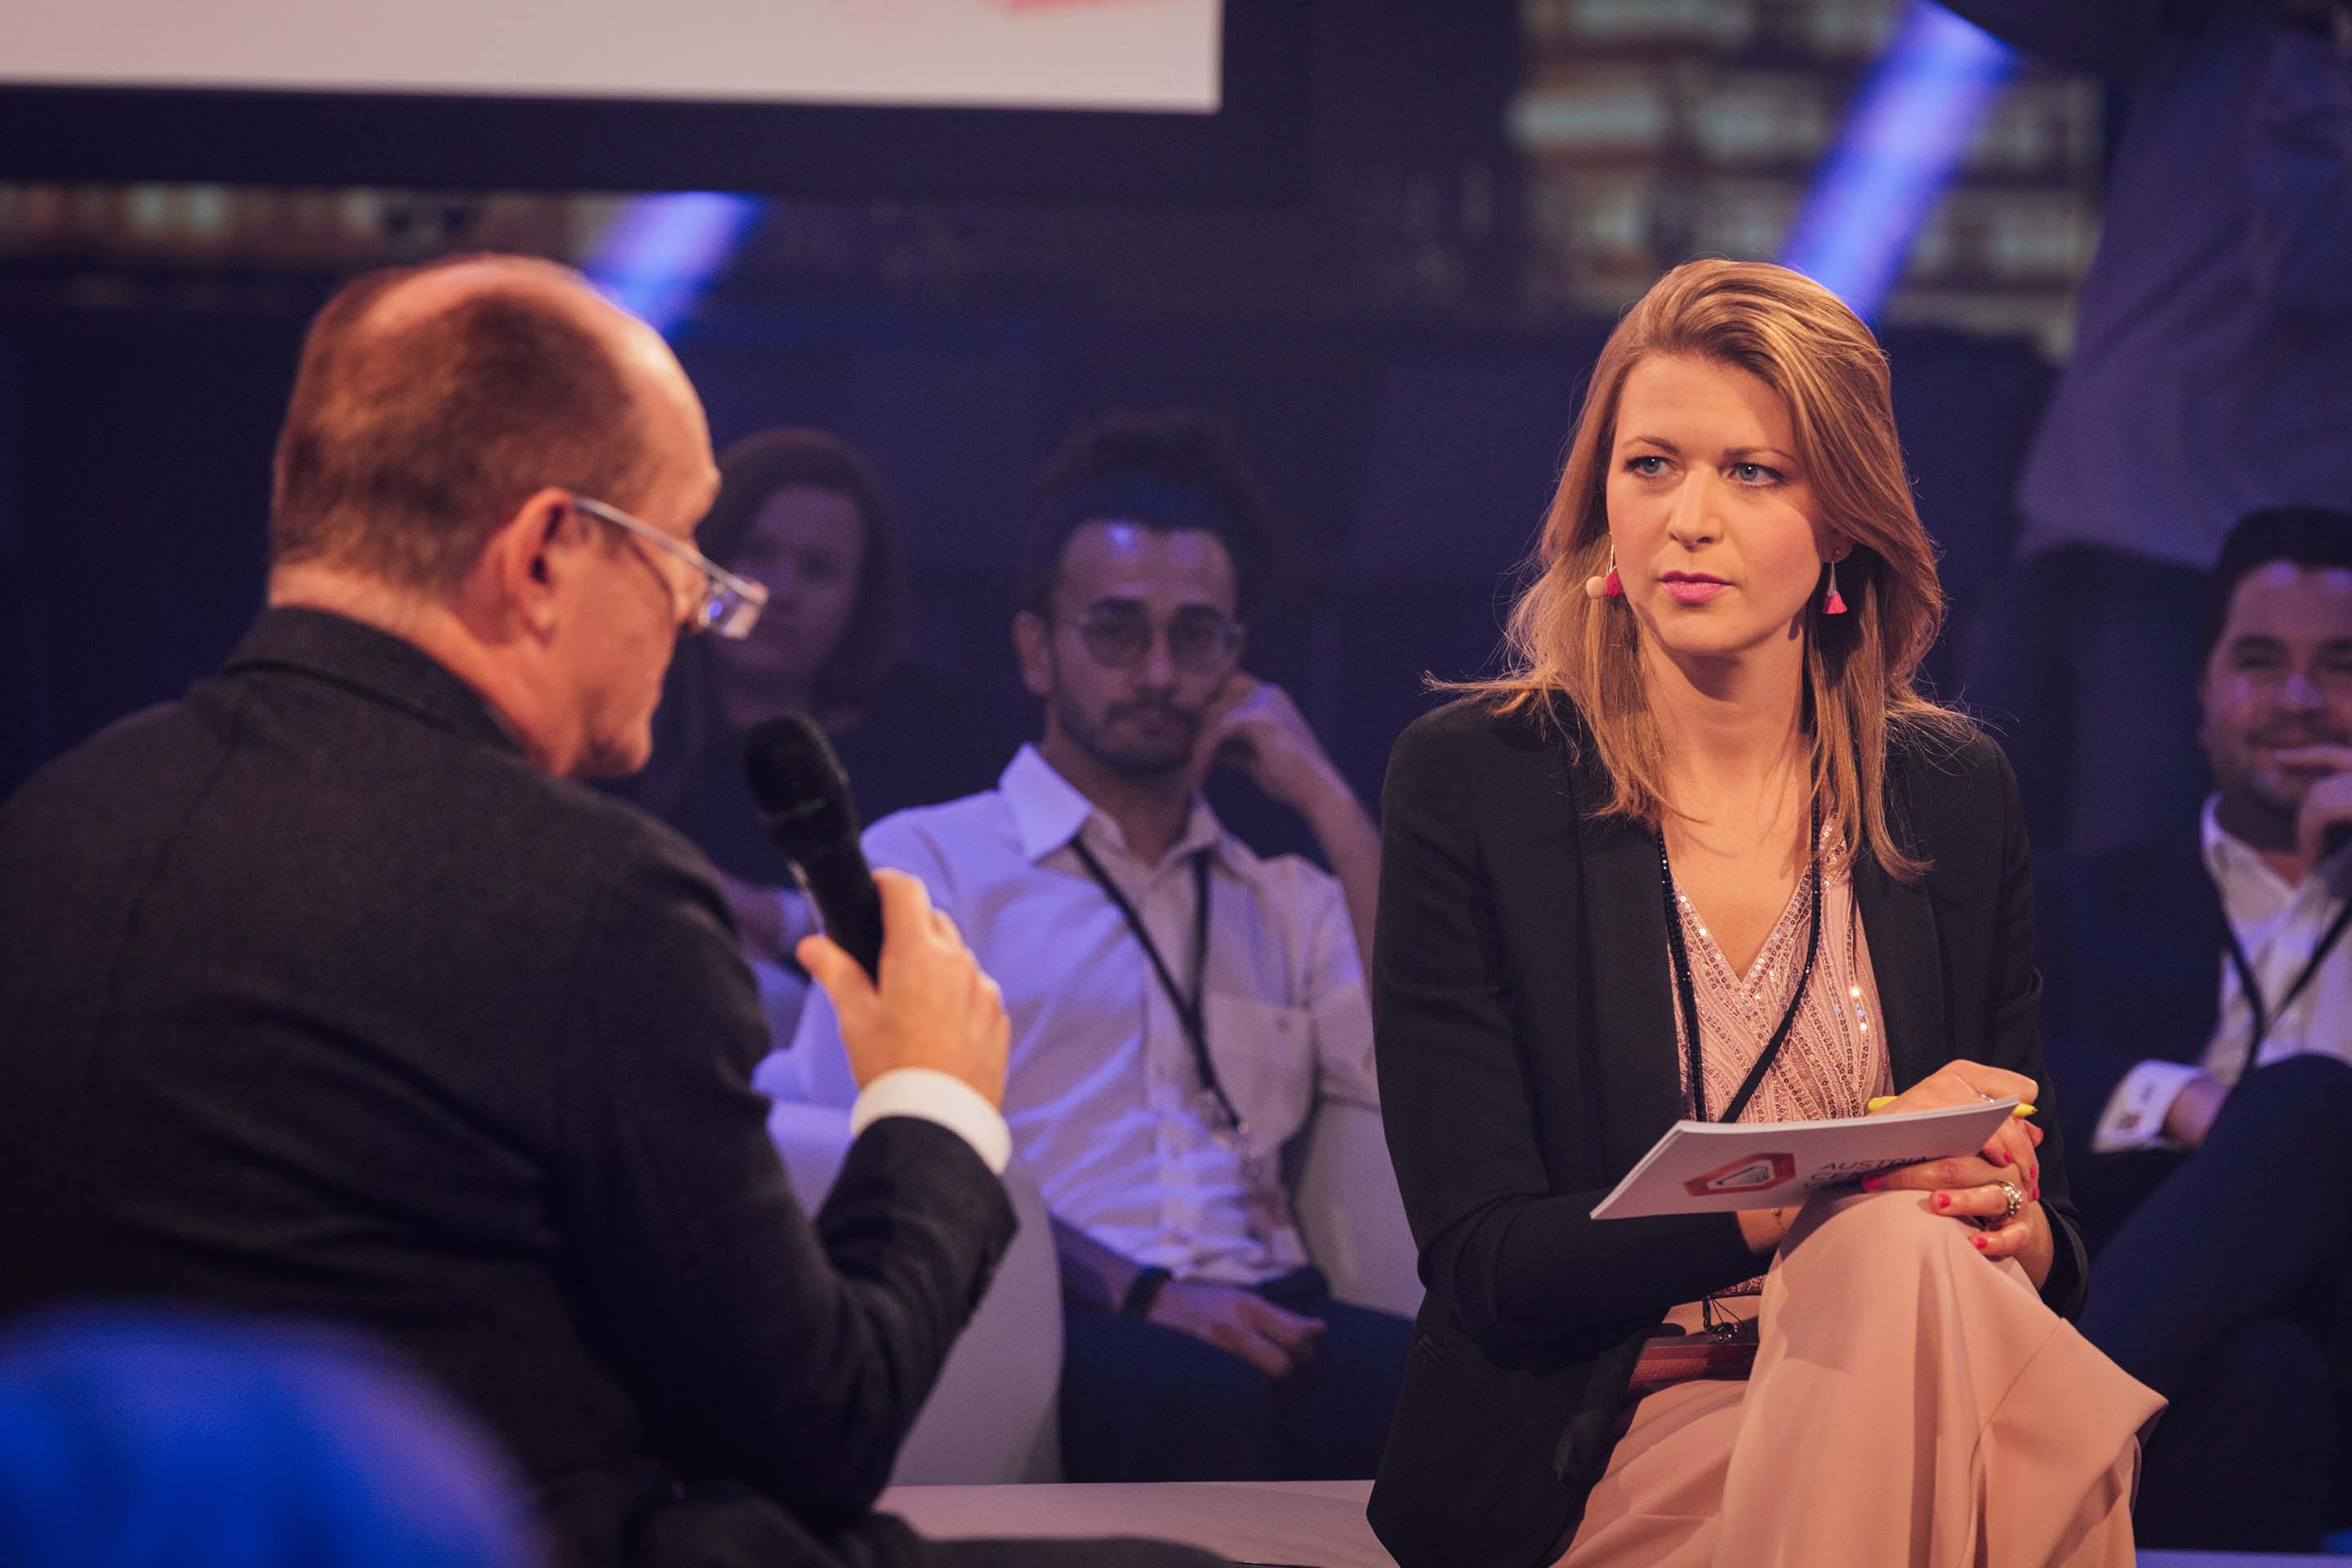 Foto: Hybrid Meeting Moderatorin interviewt Gastredner mit Publikum im Hintergrund im Austria Center Vienna